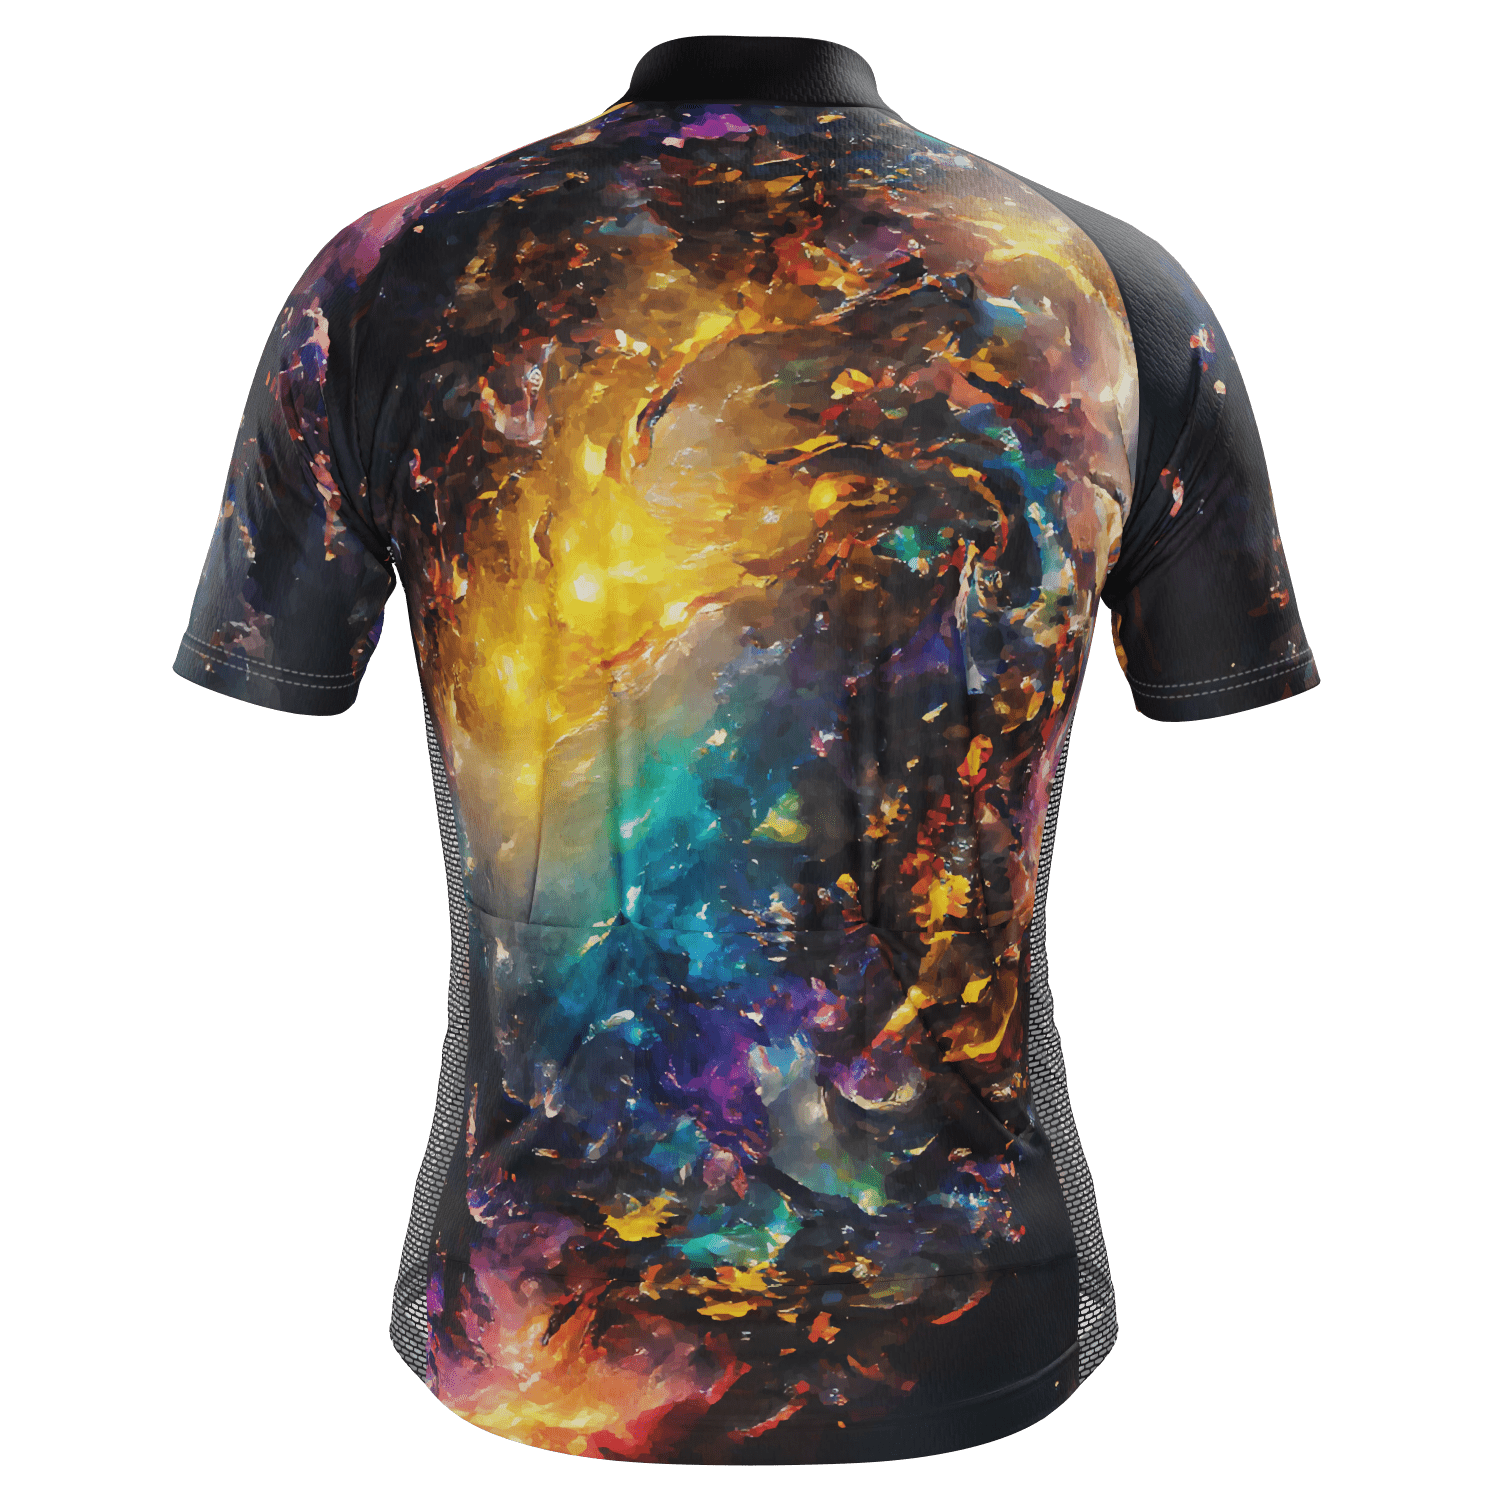 Men's Nebula Short Sleeve Cycling Jersey